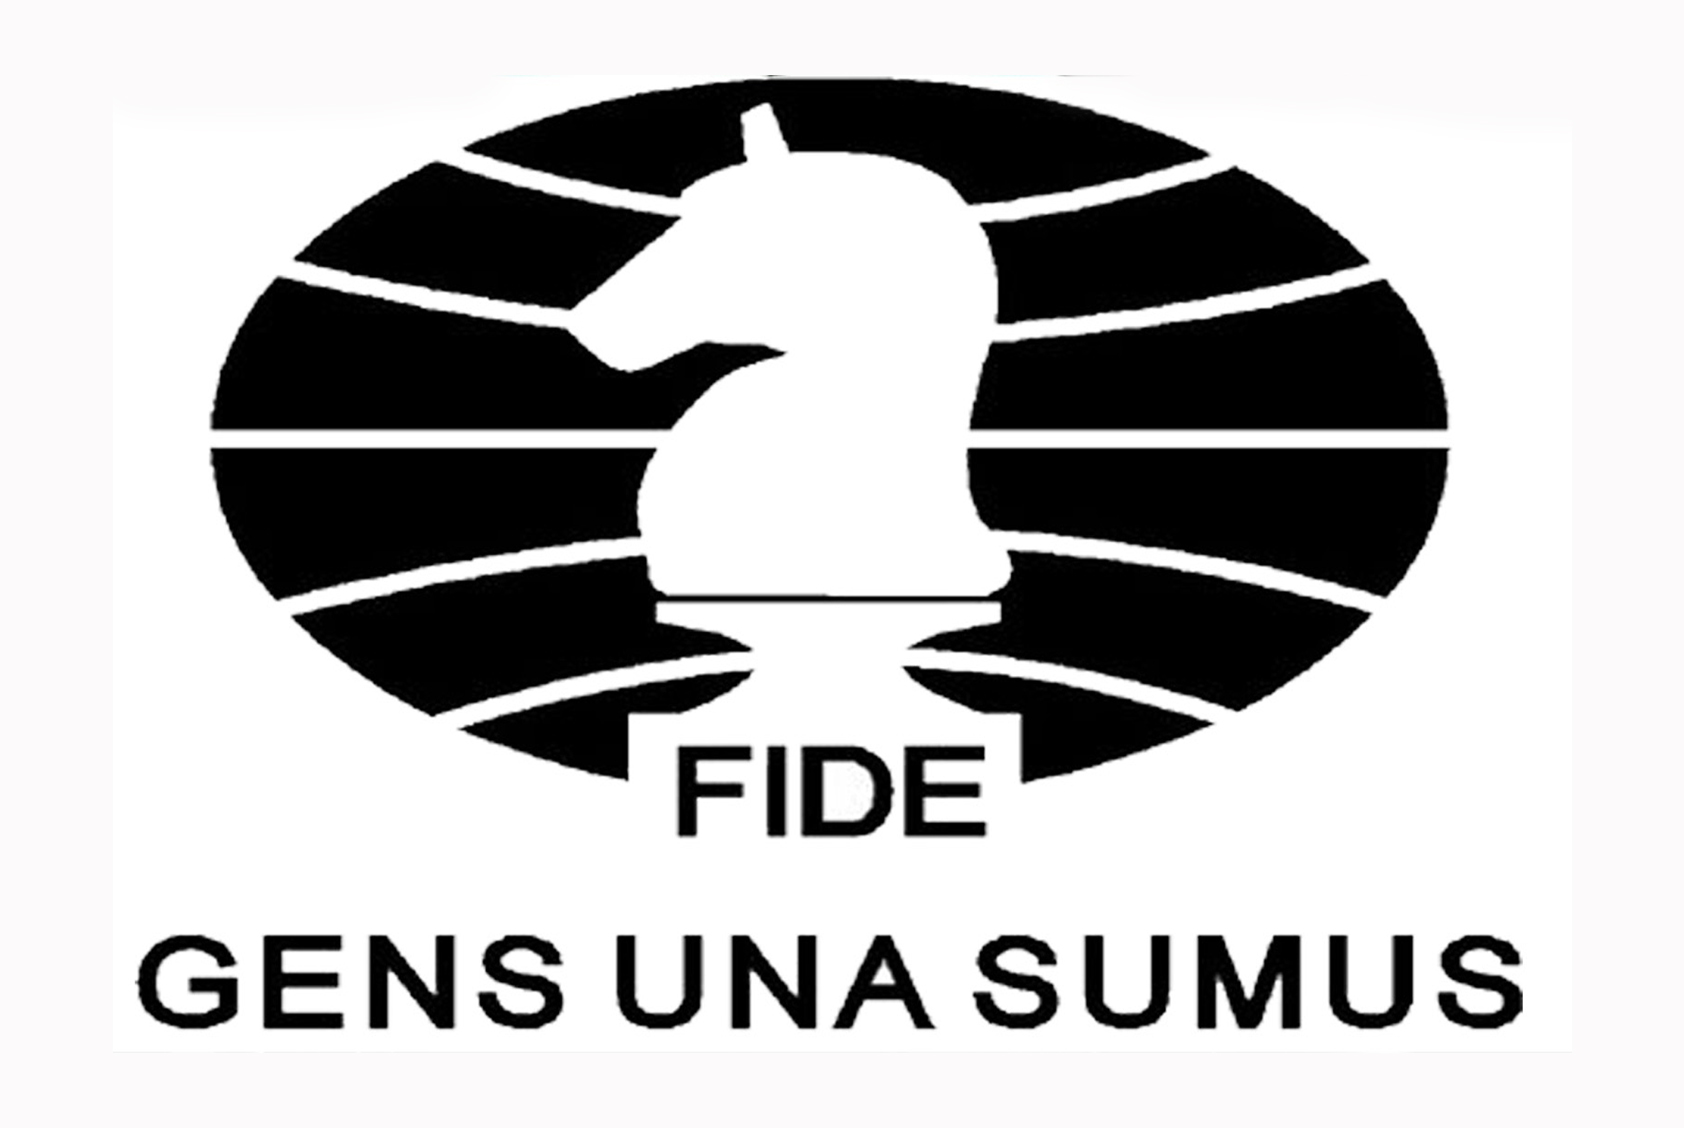 TESSTH FIDE